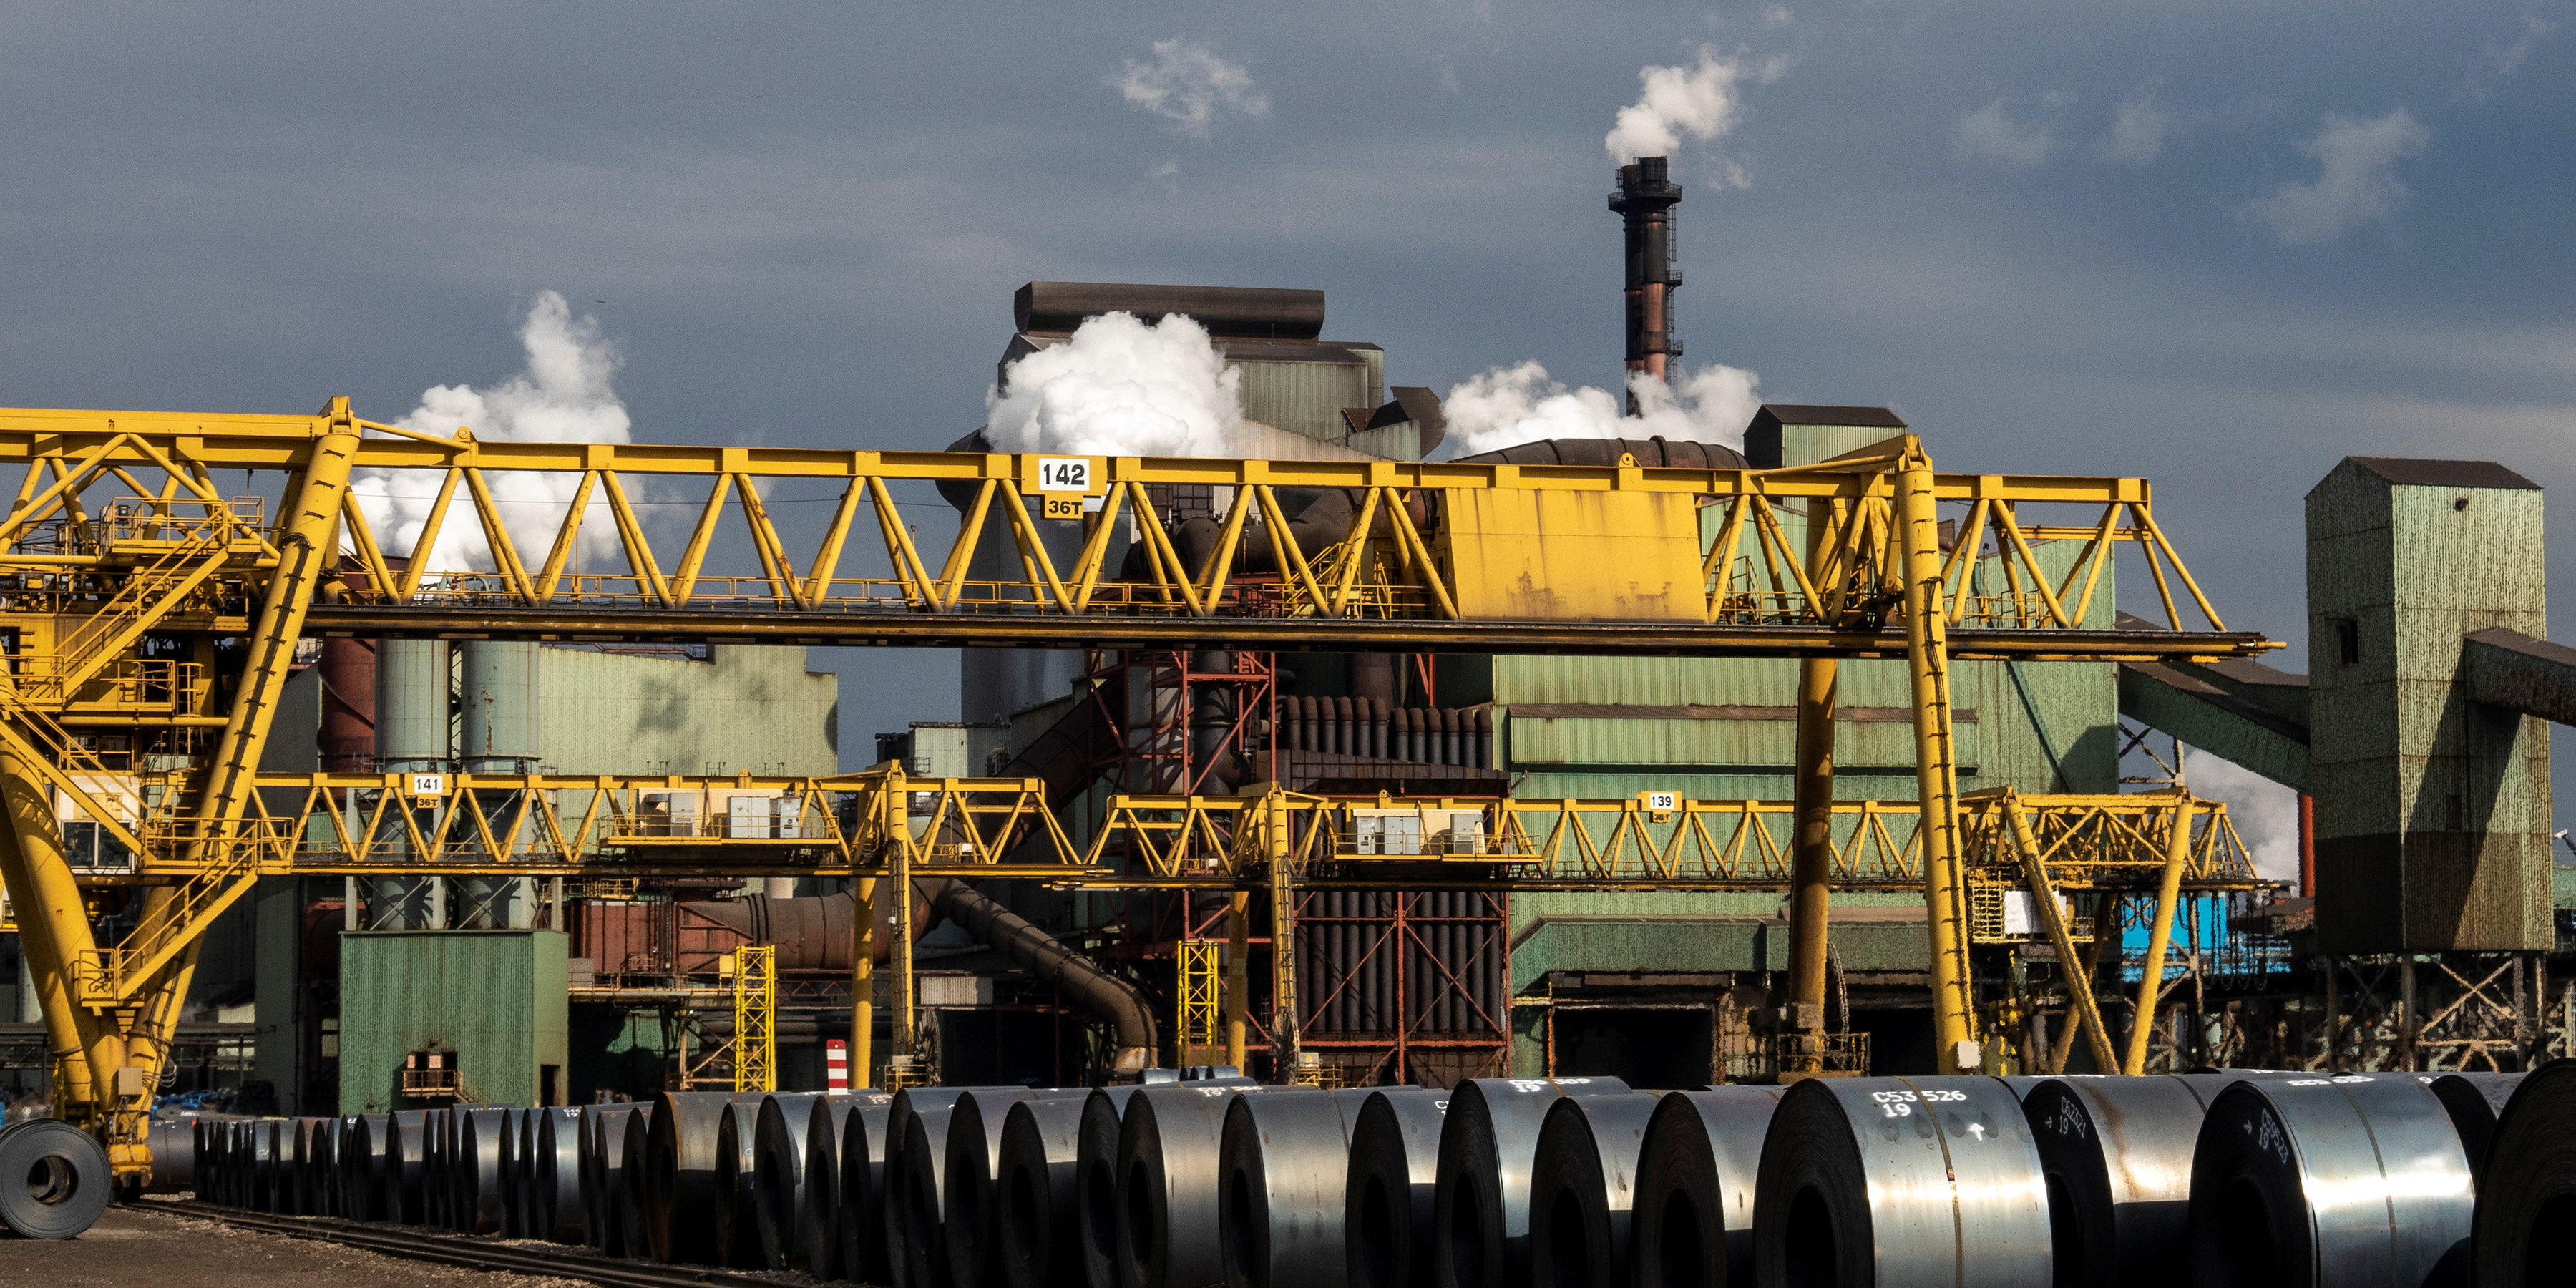 Résultats: ArcelorMittal plombé par le prix de l'énergie et la chute des cours de l'acier